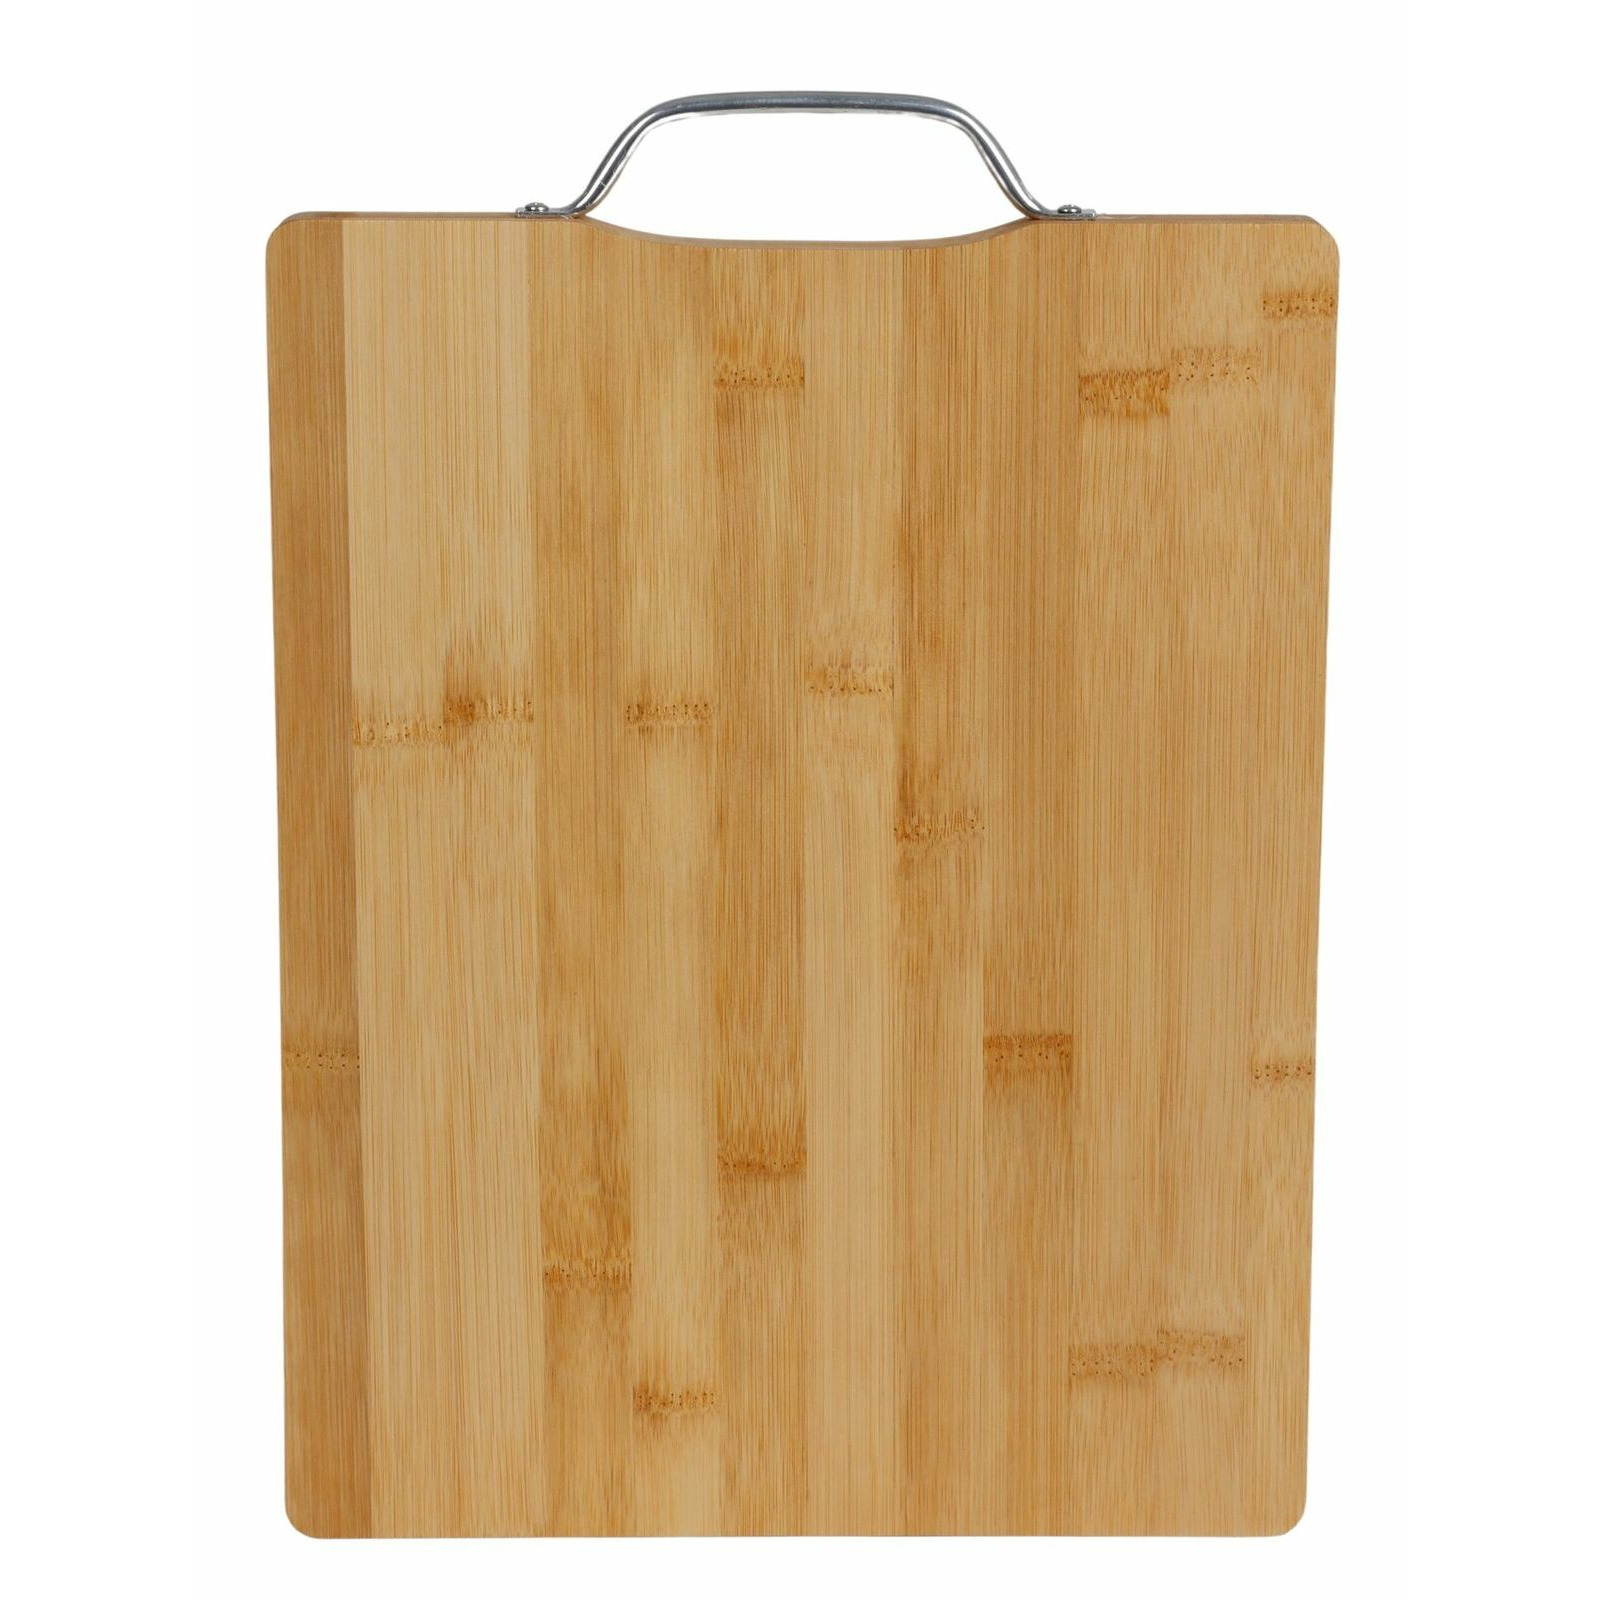 Bamboe houten snijplank-serveerplank met metalen handvat L33 x B25 cm